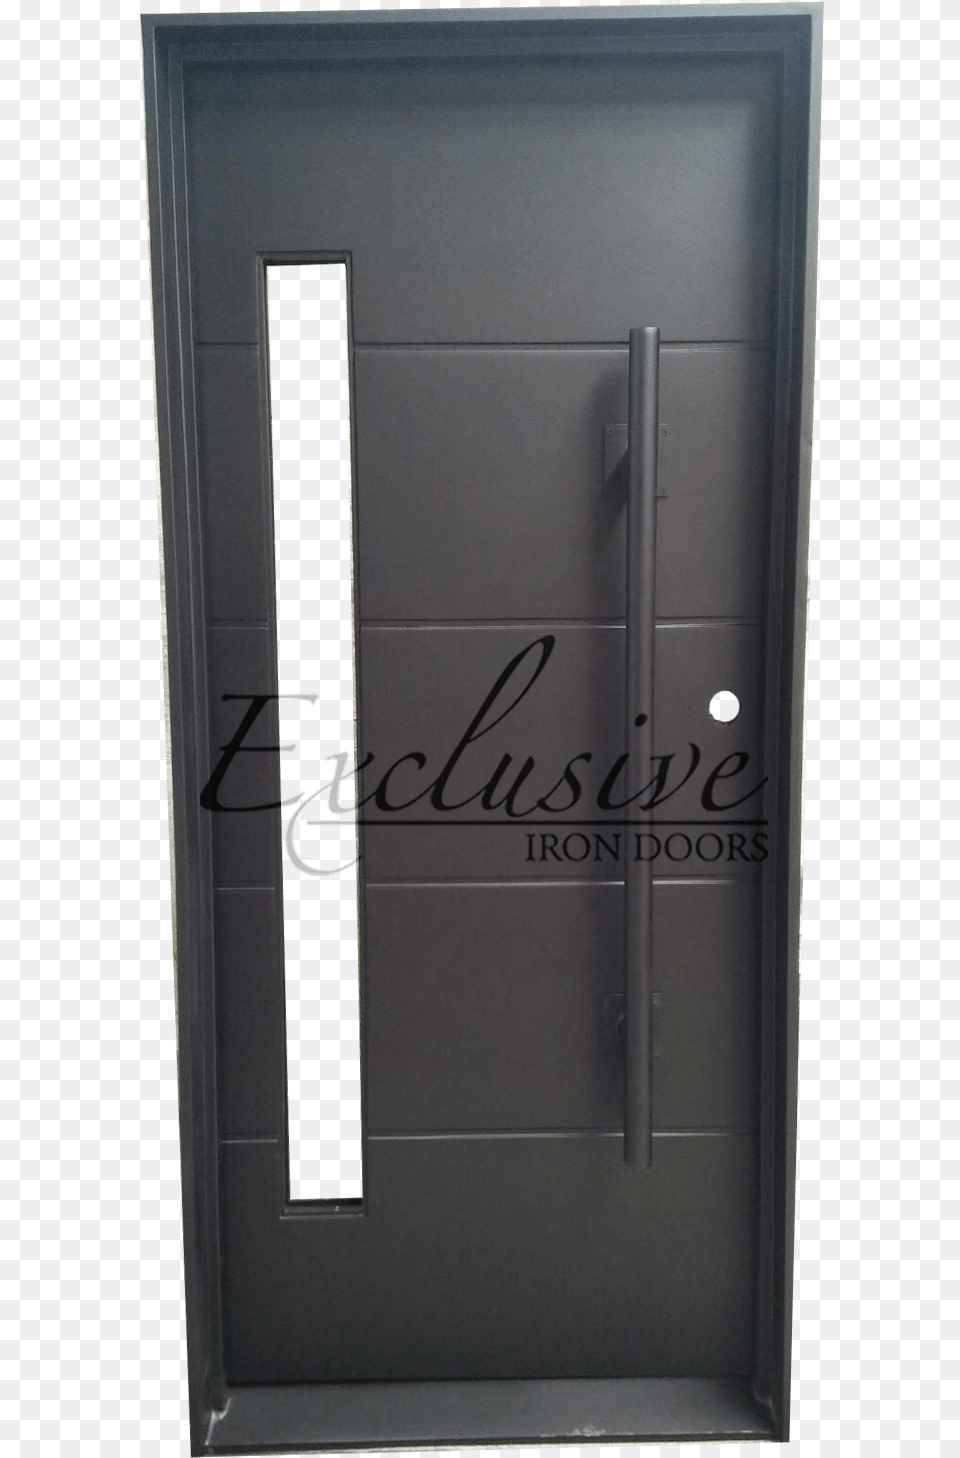 Robinson Single Iron Door Exclusive Iron Doors Screen Door Png Image